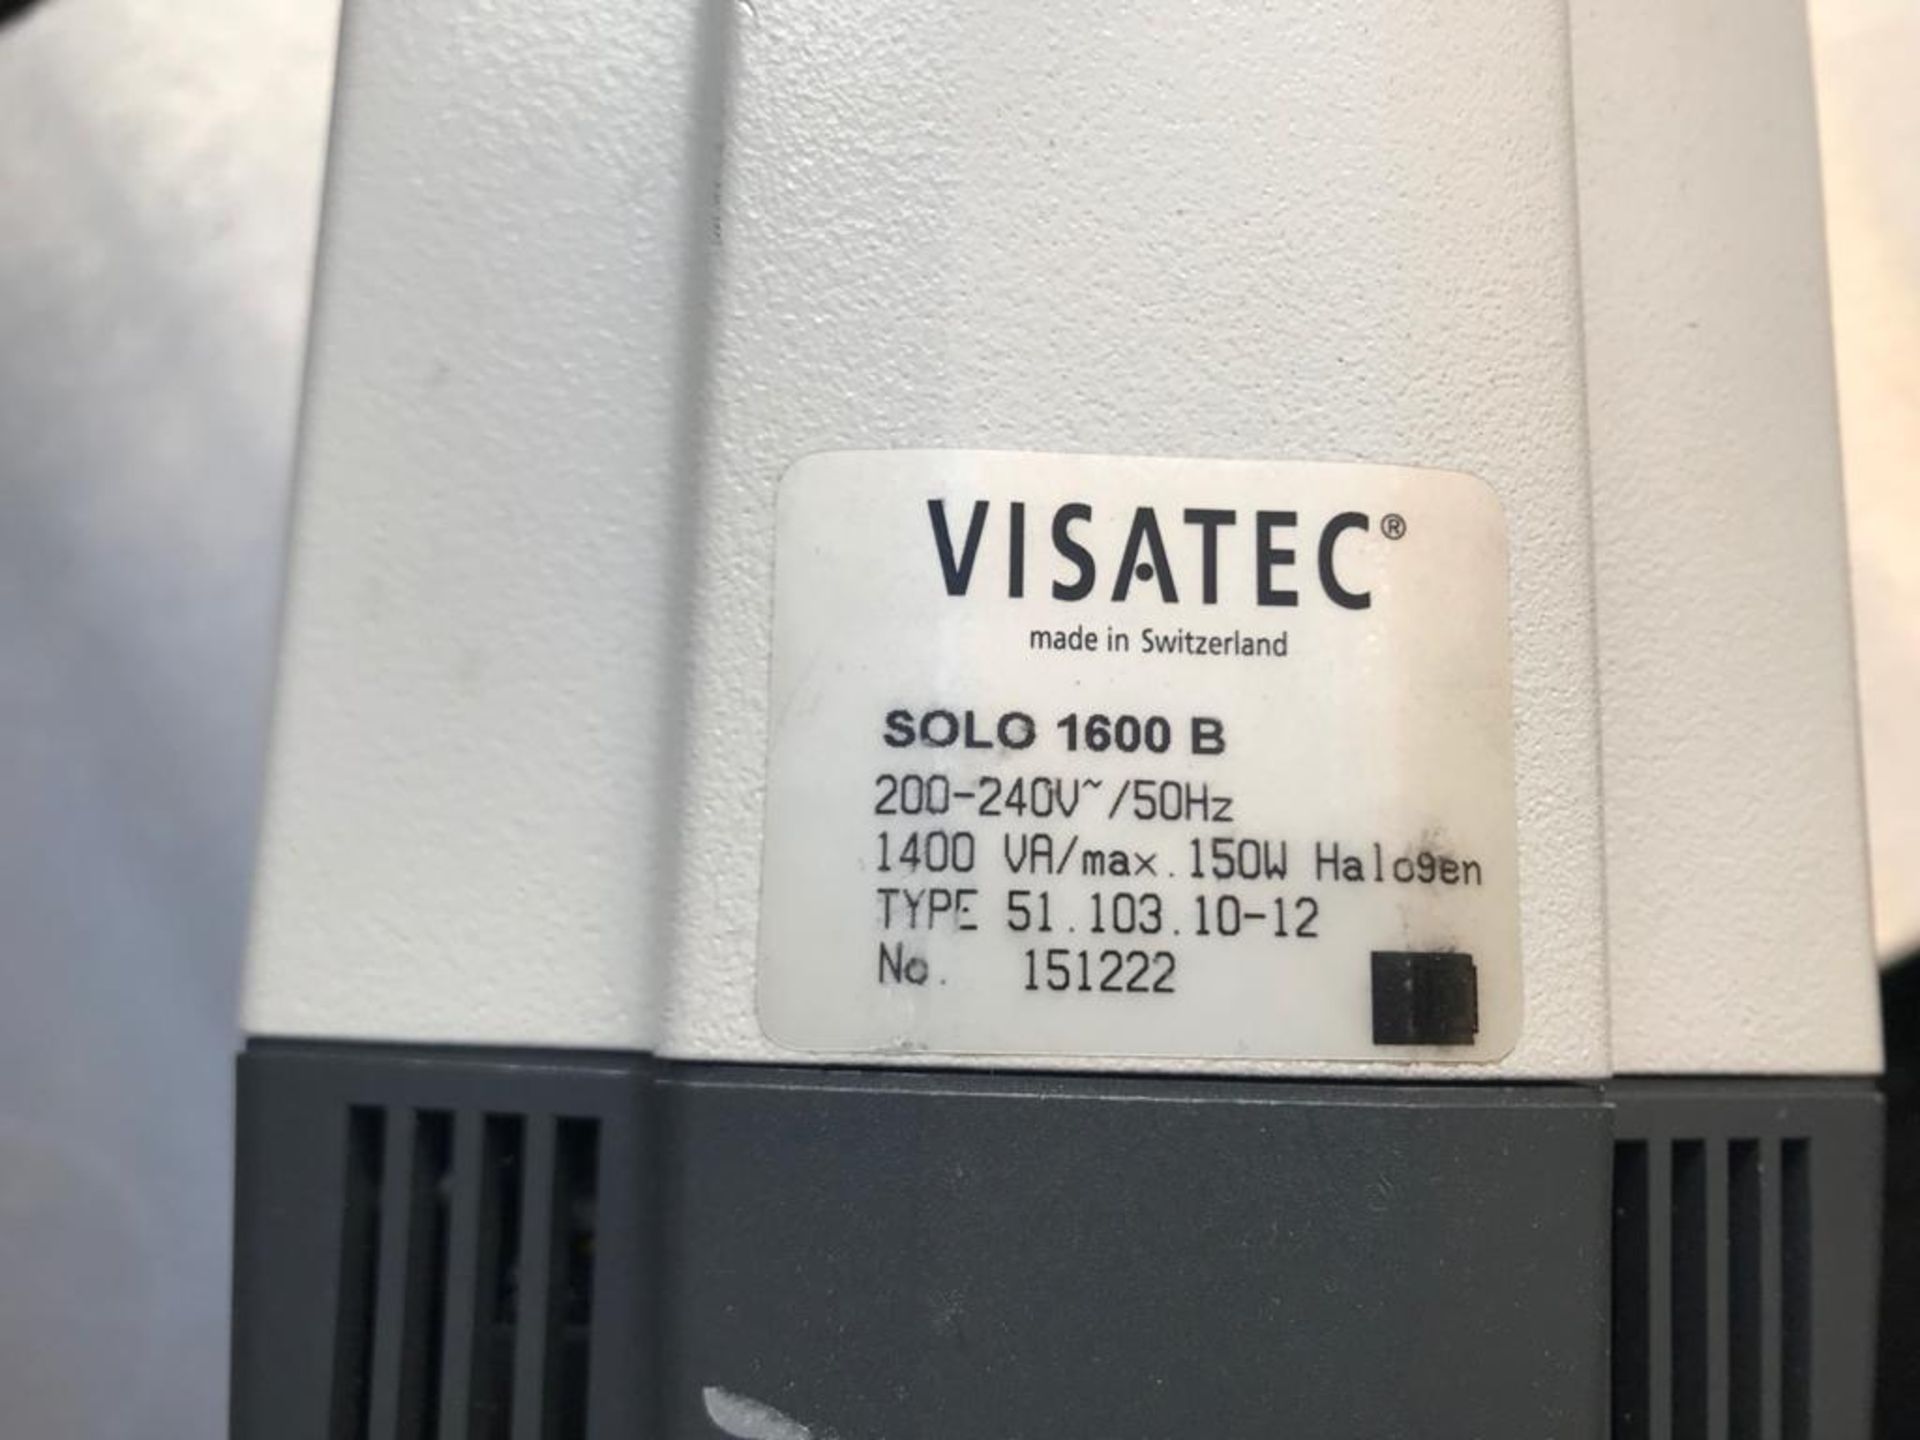 Visatec Solo 1600 B - Bild 2 aus 4